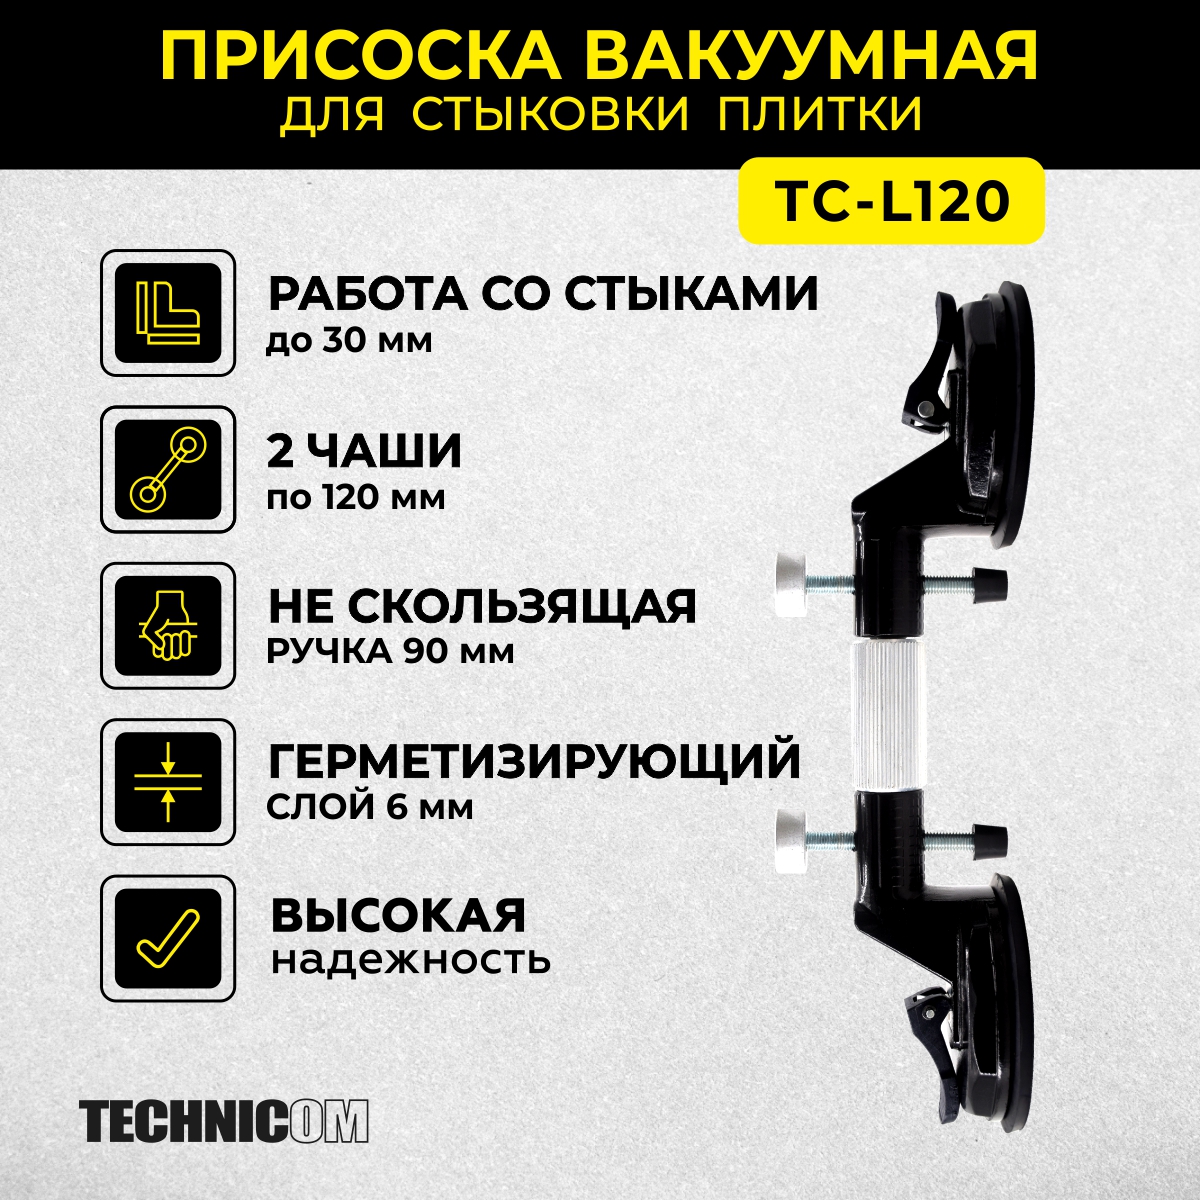 Присоска вакуумная для стыковки плитки TECHNICOM TC-L120 присоска ножницы для снятия дисплея rexant